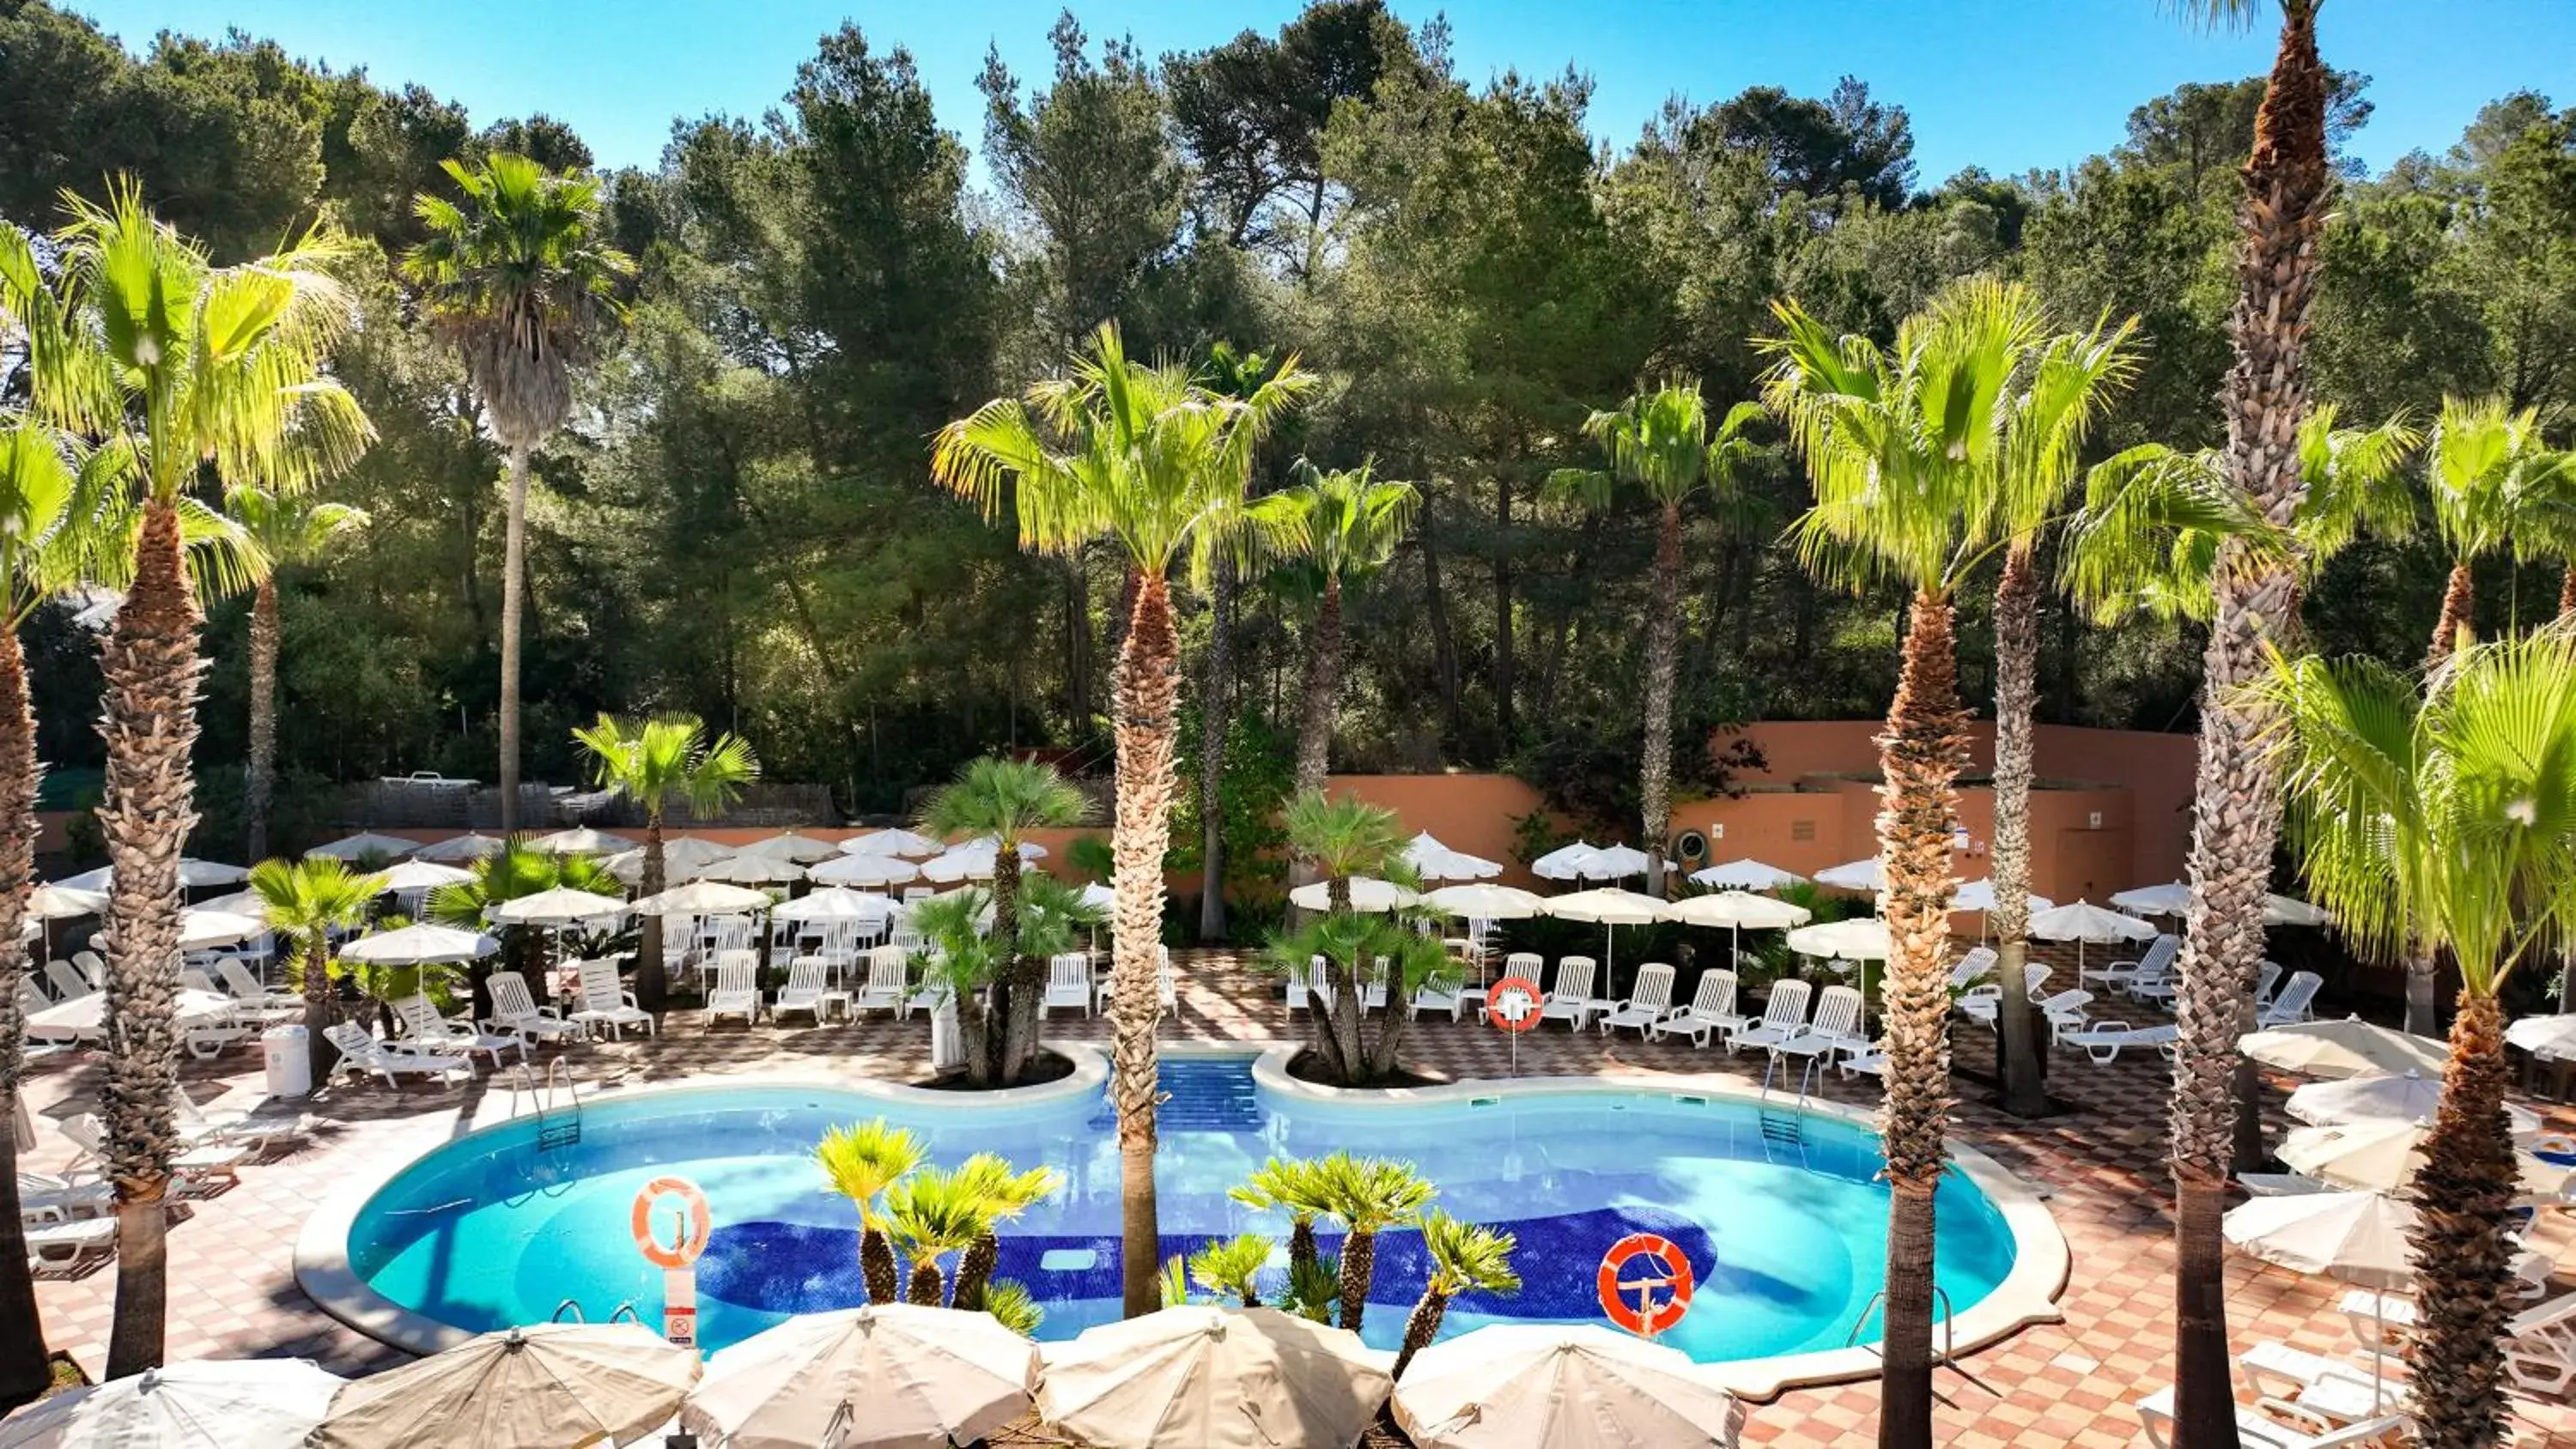 Pool View in Hotel Cala Romantica Mallorca